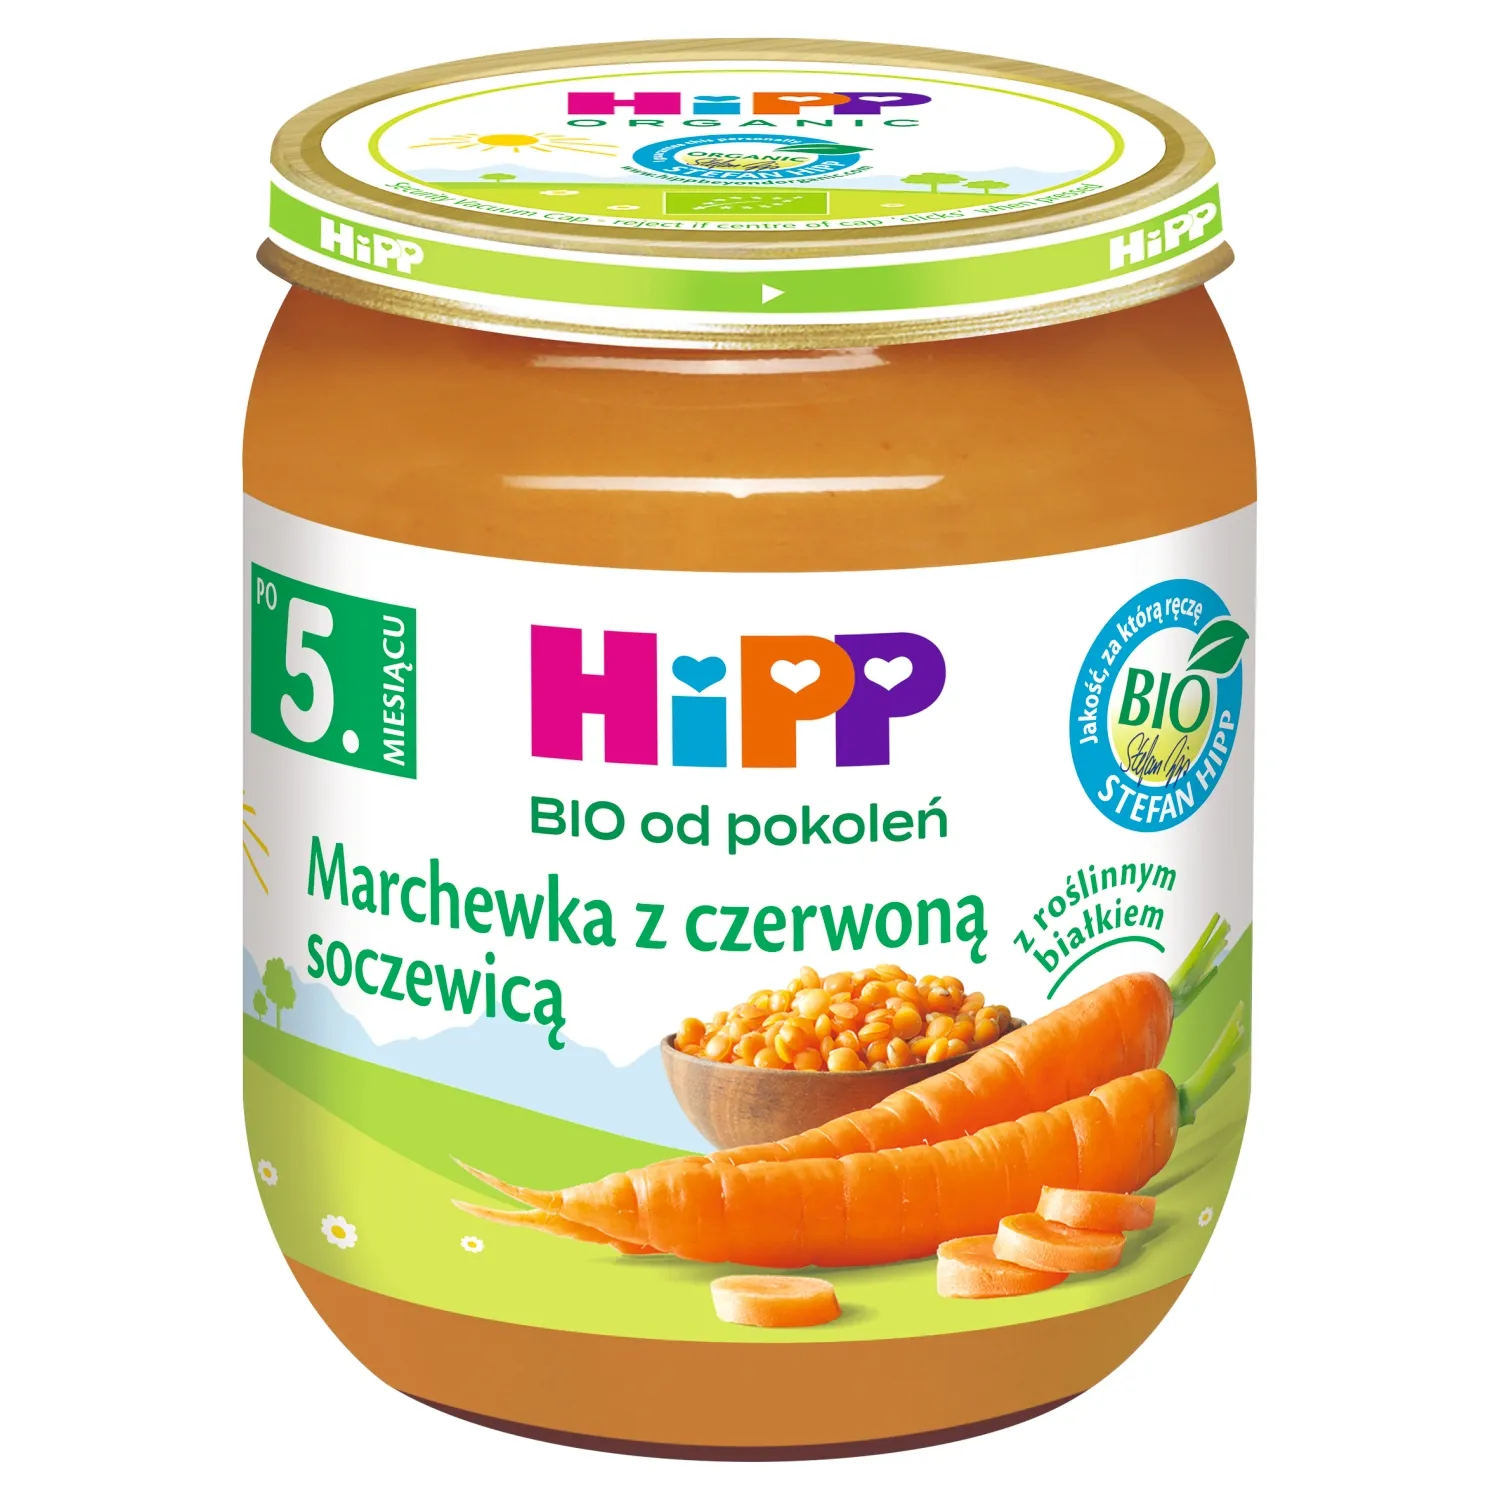 HiPP BIO od pokoleń obiadek marchewka z czerwoną soczewicą po 5. miesiącu, 125 g